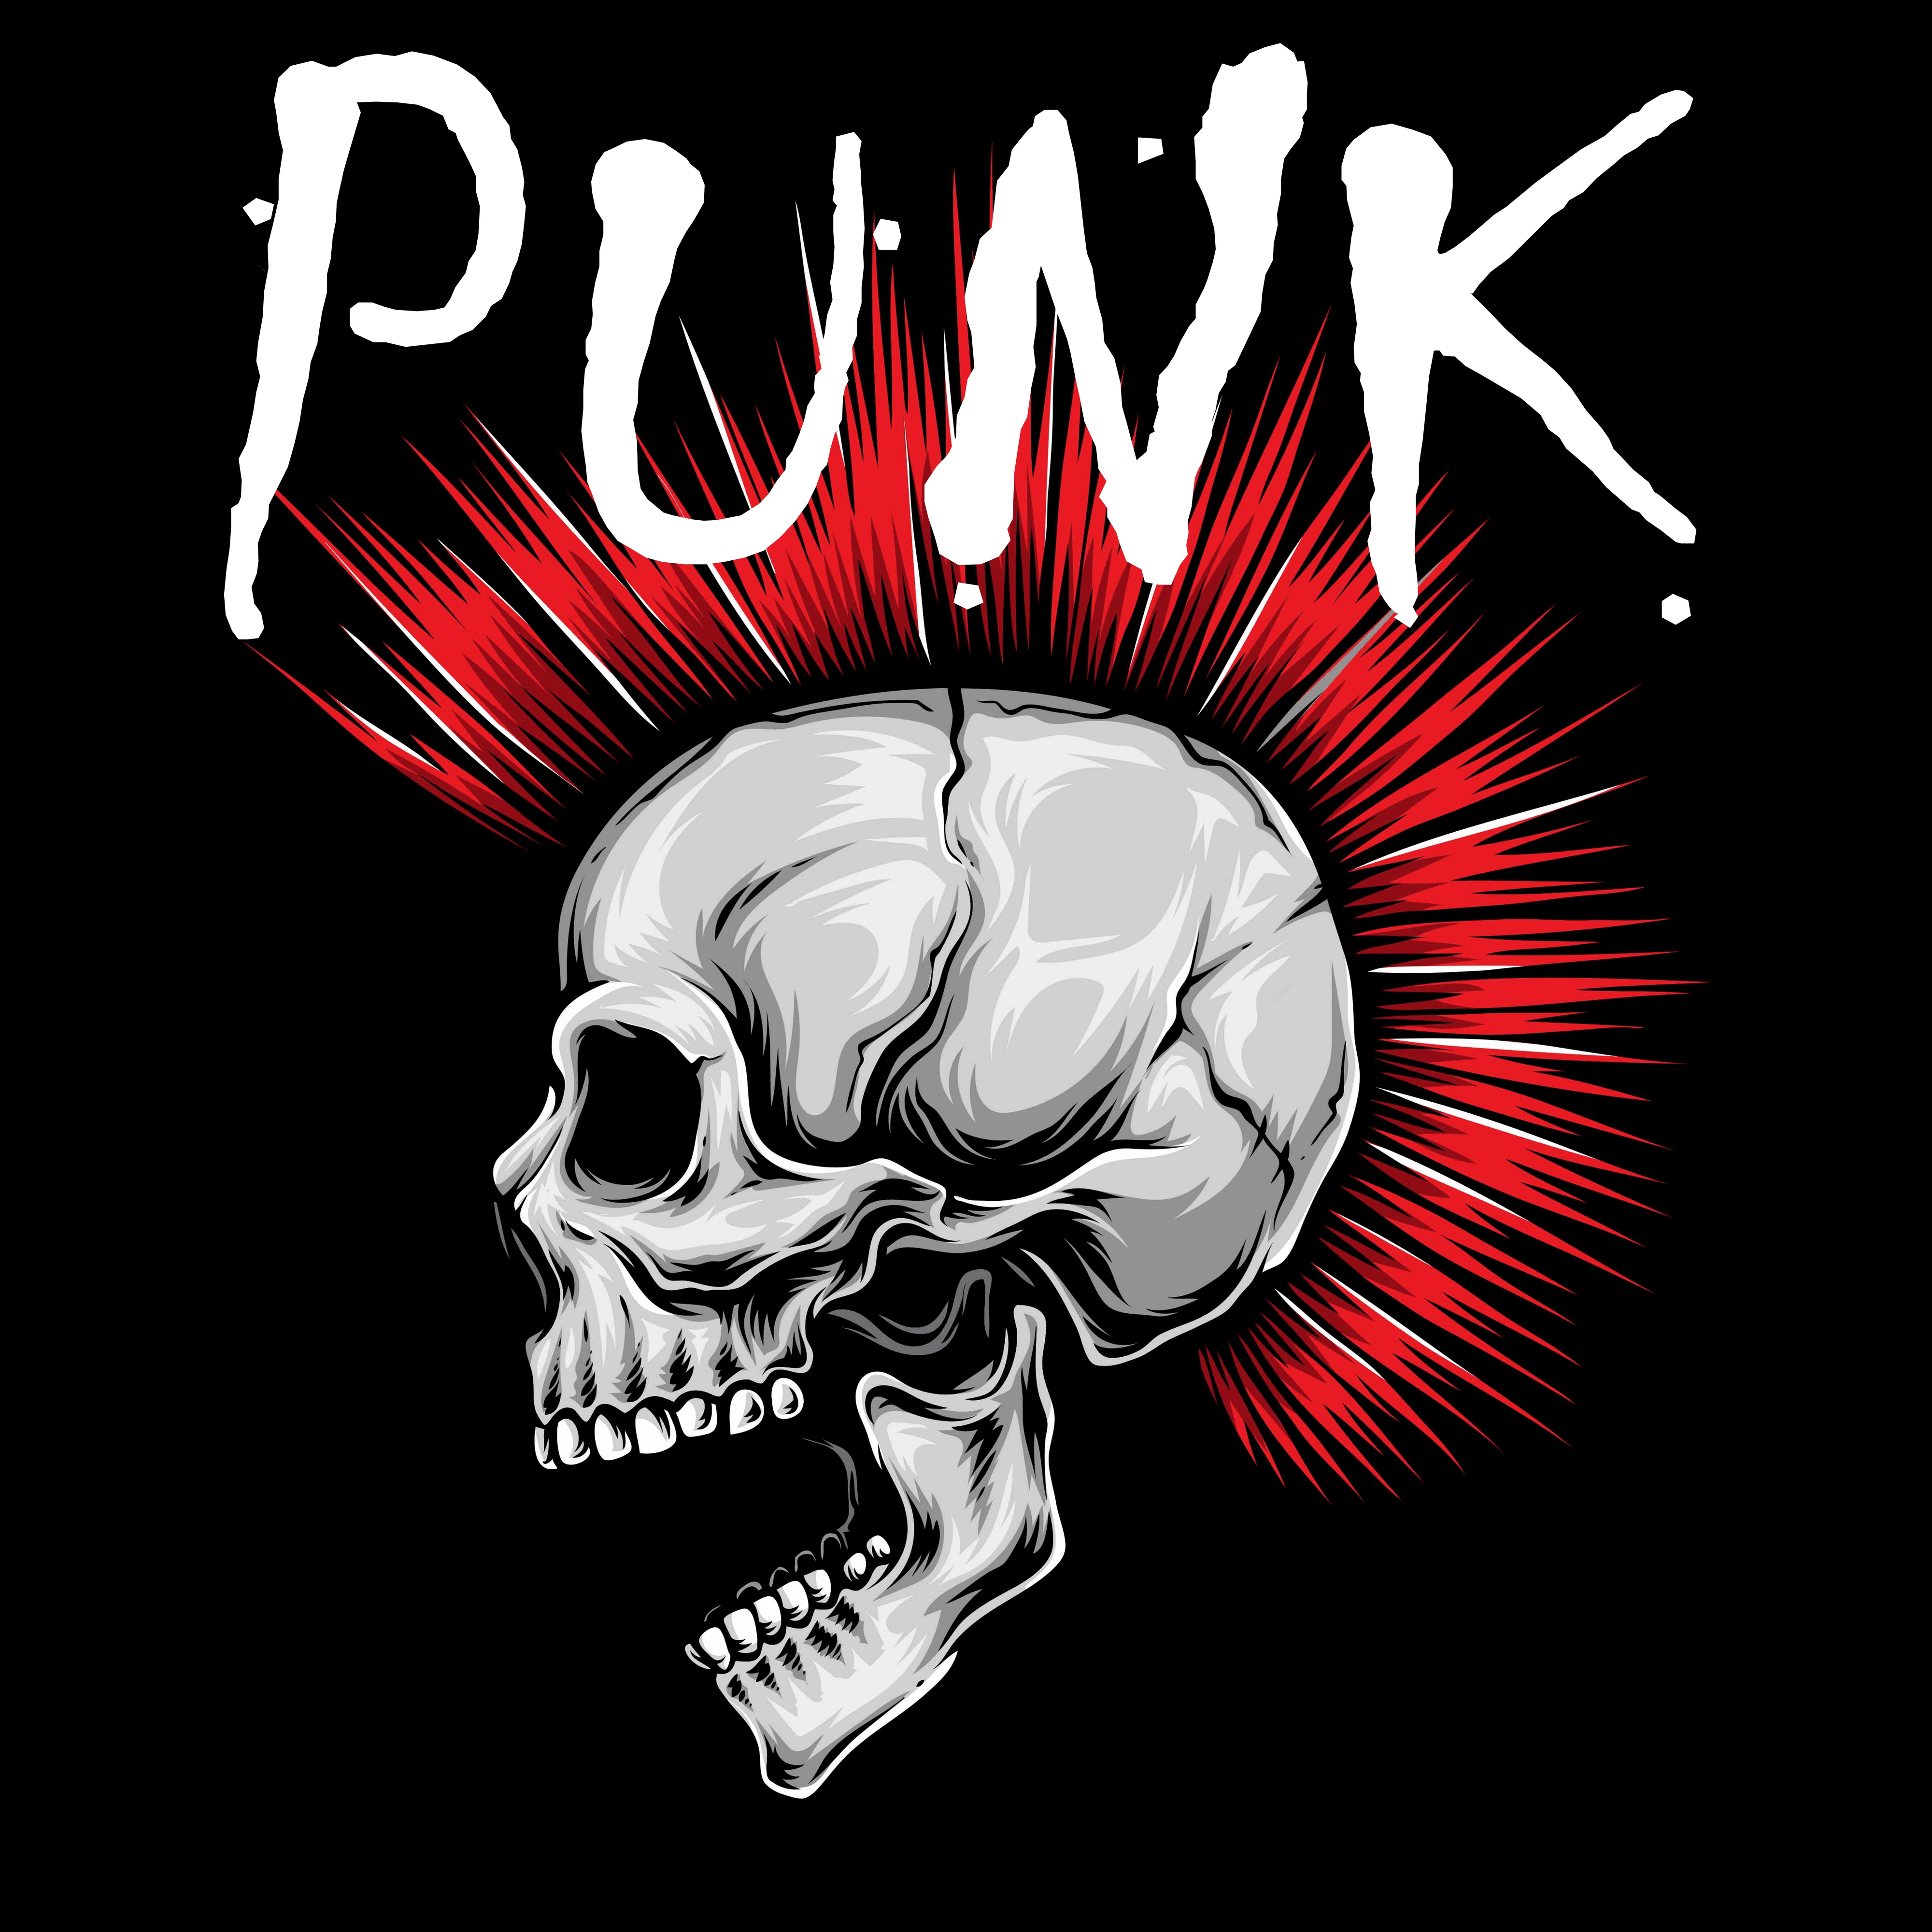 Kyked "Punk"